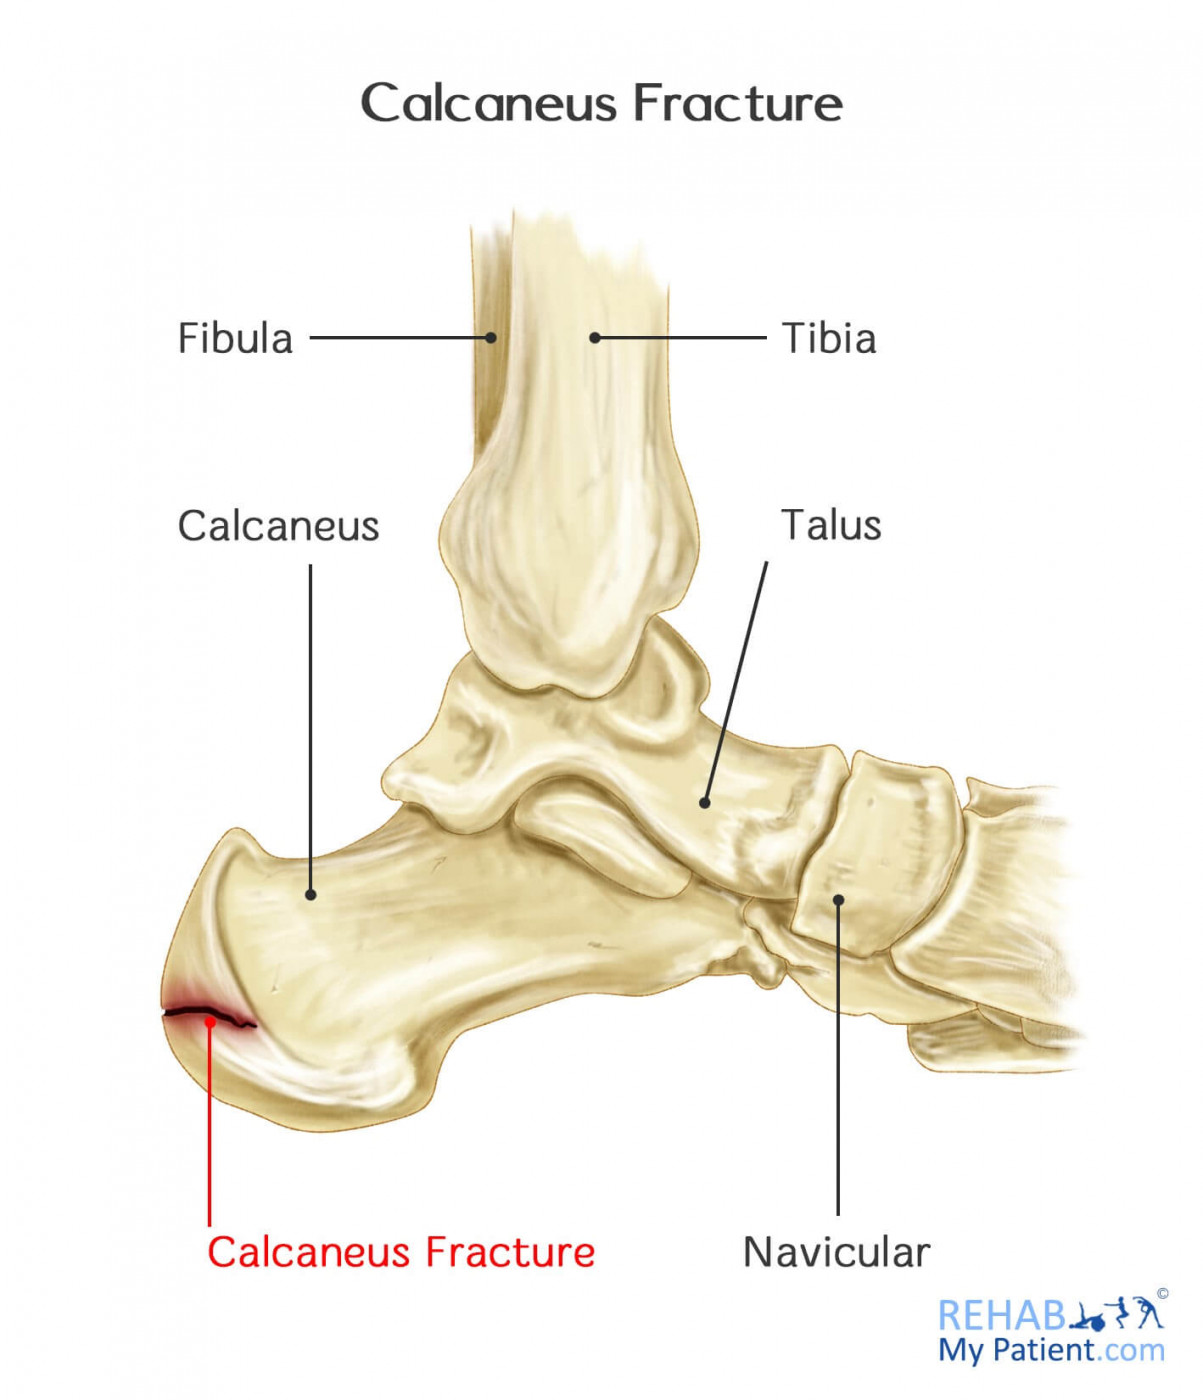 Calcaneus Fracture